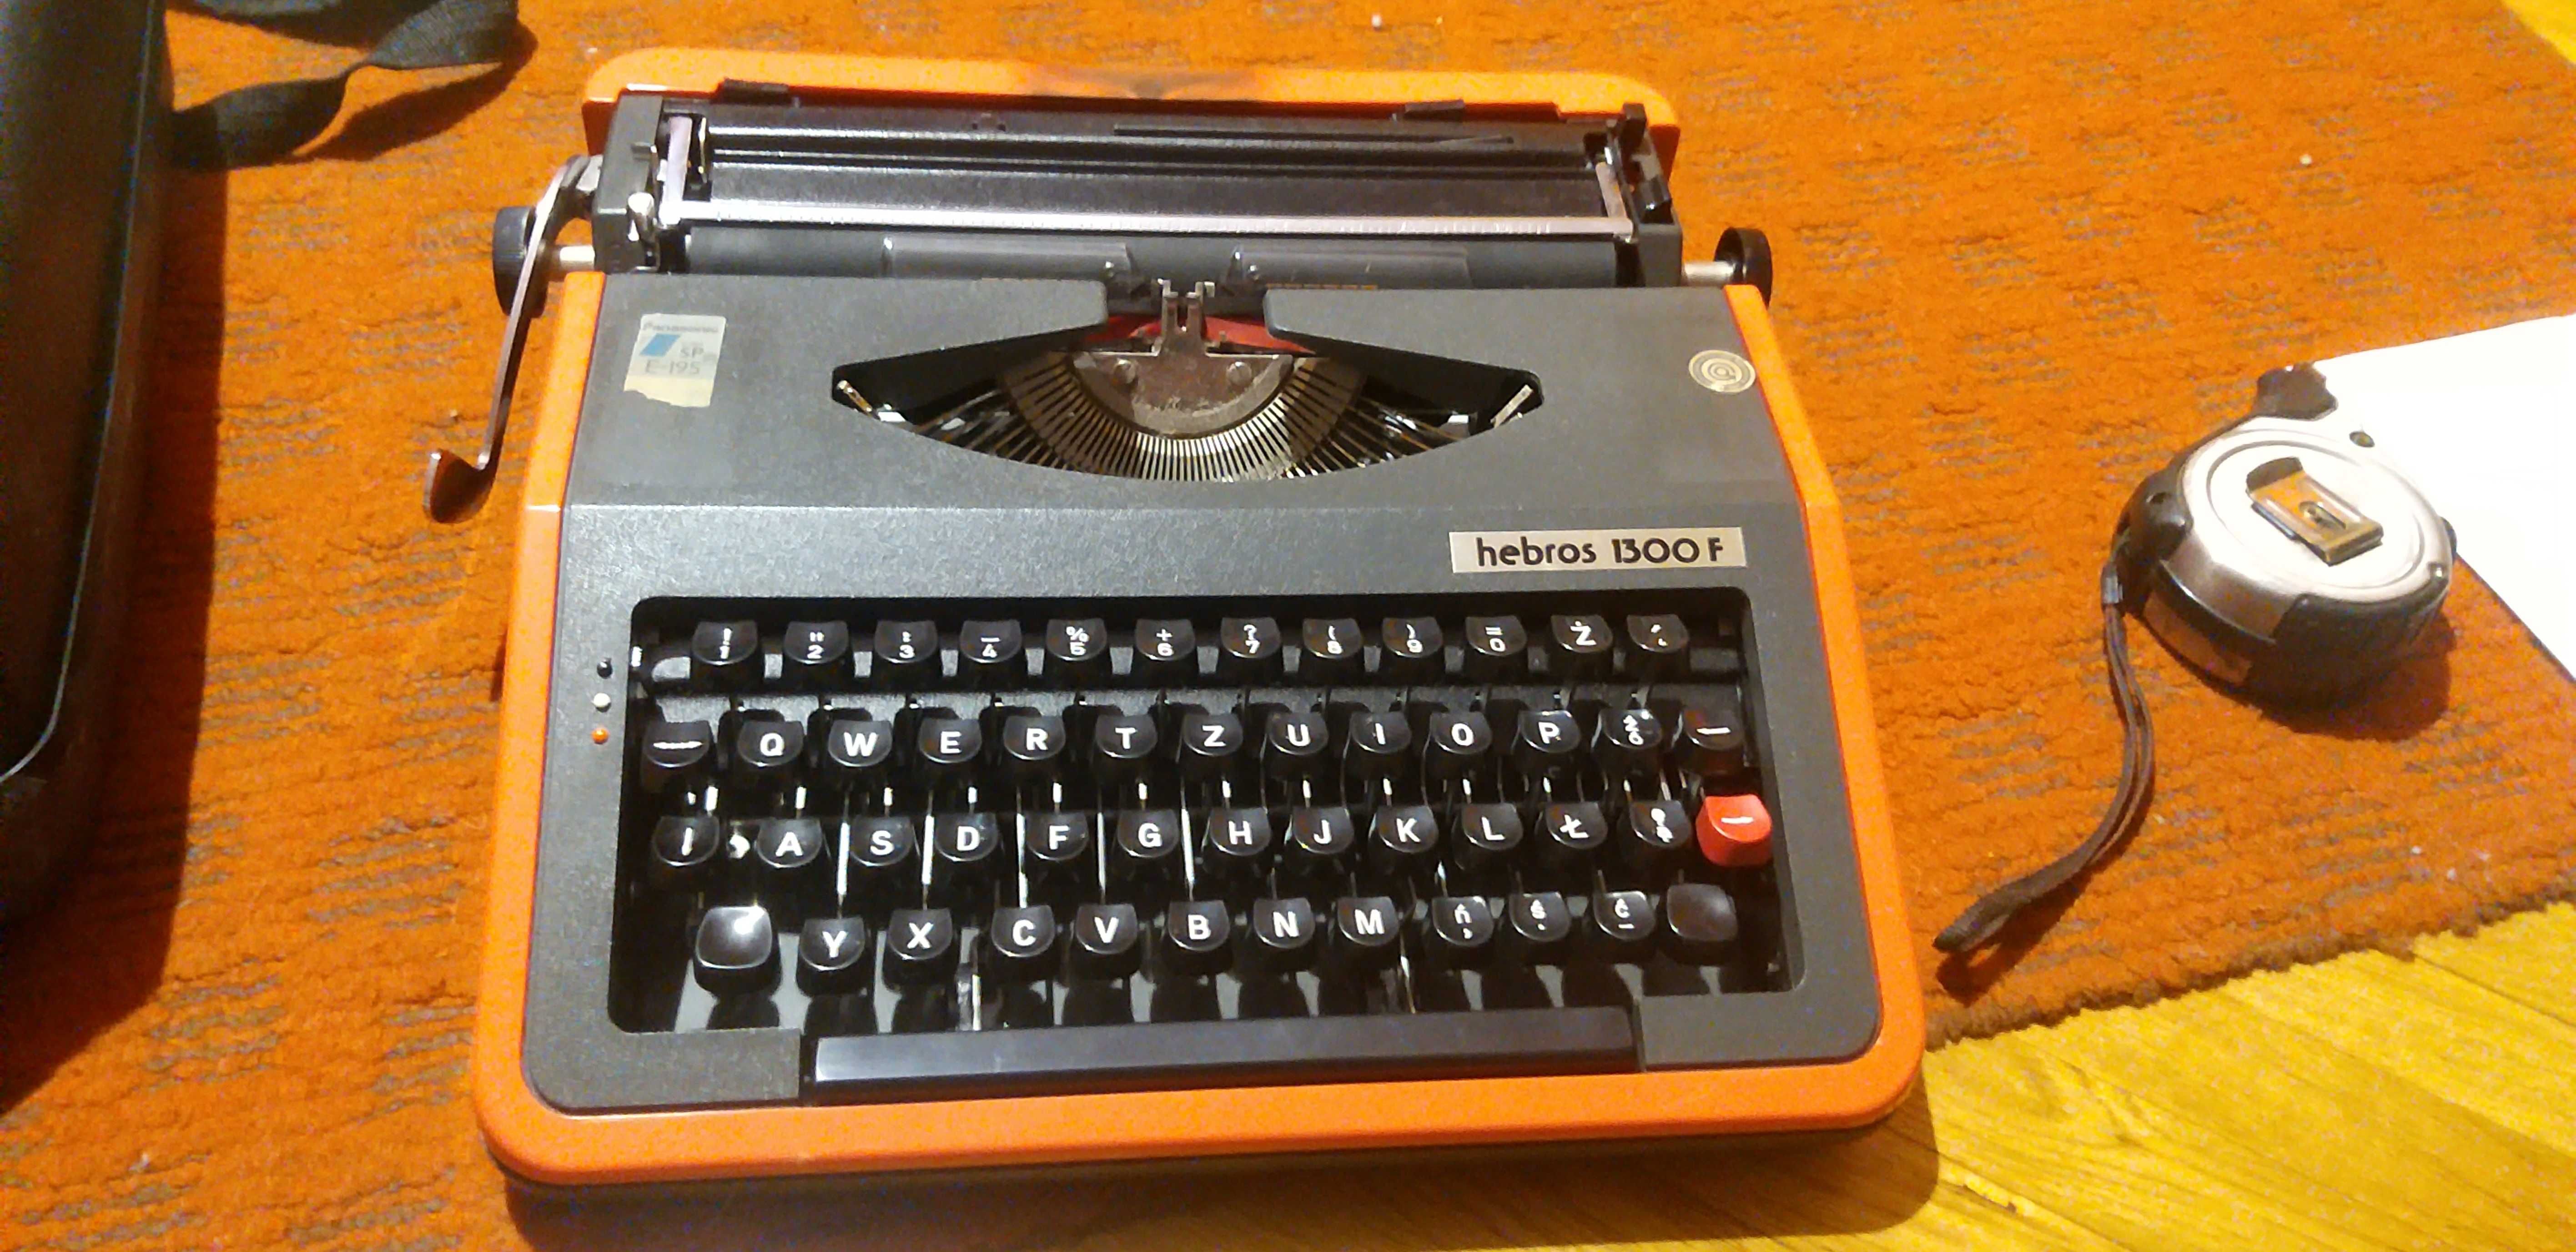 Walizkowa maszyna do pisania Hebros 1300F